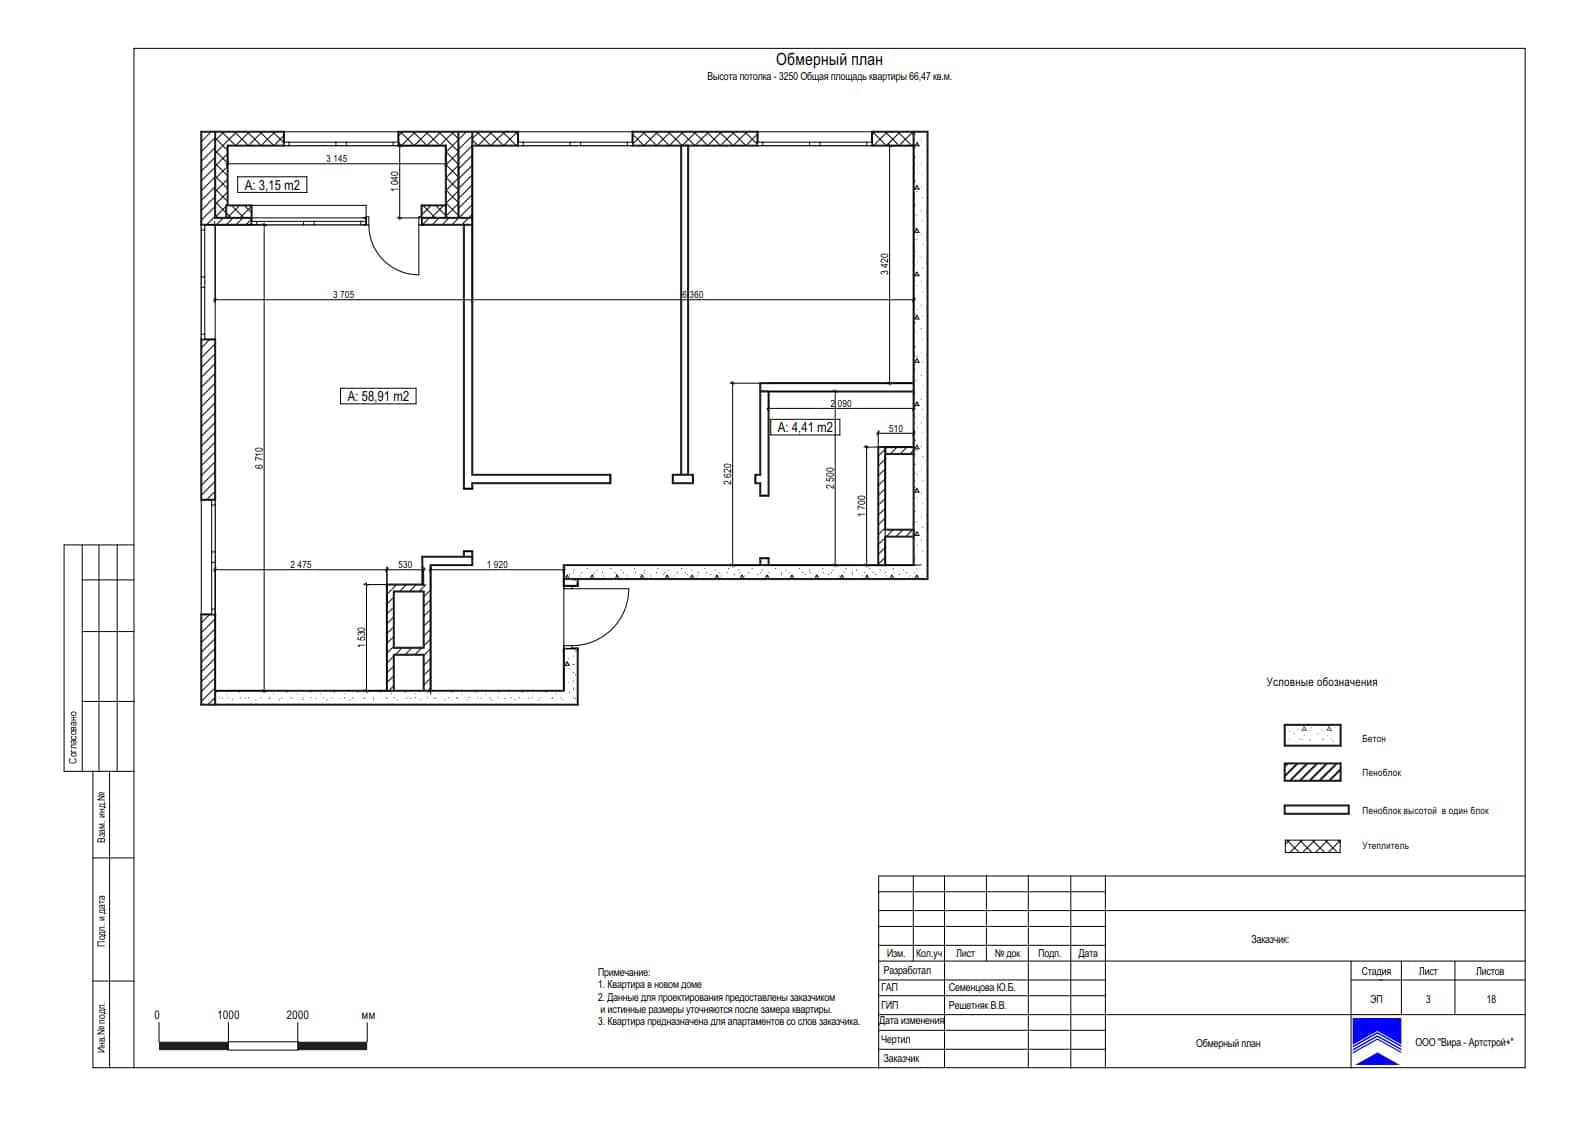 Обмерный план, квартира 61 м² в ЖК «Хилл-8»